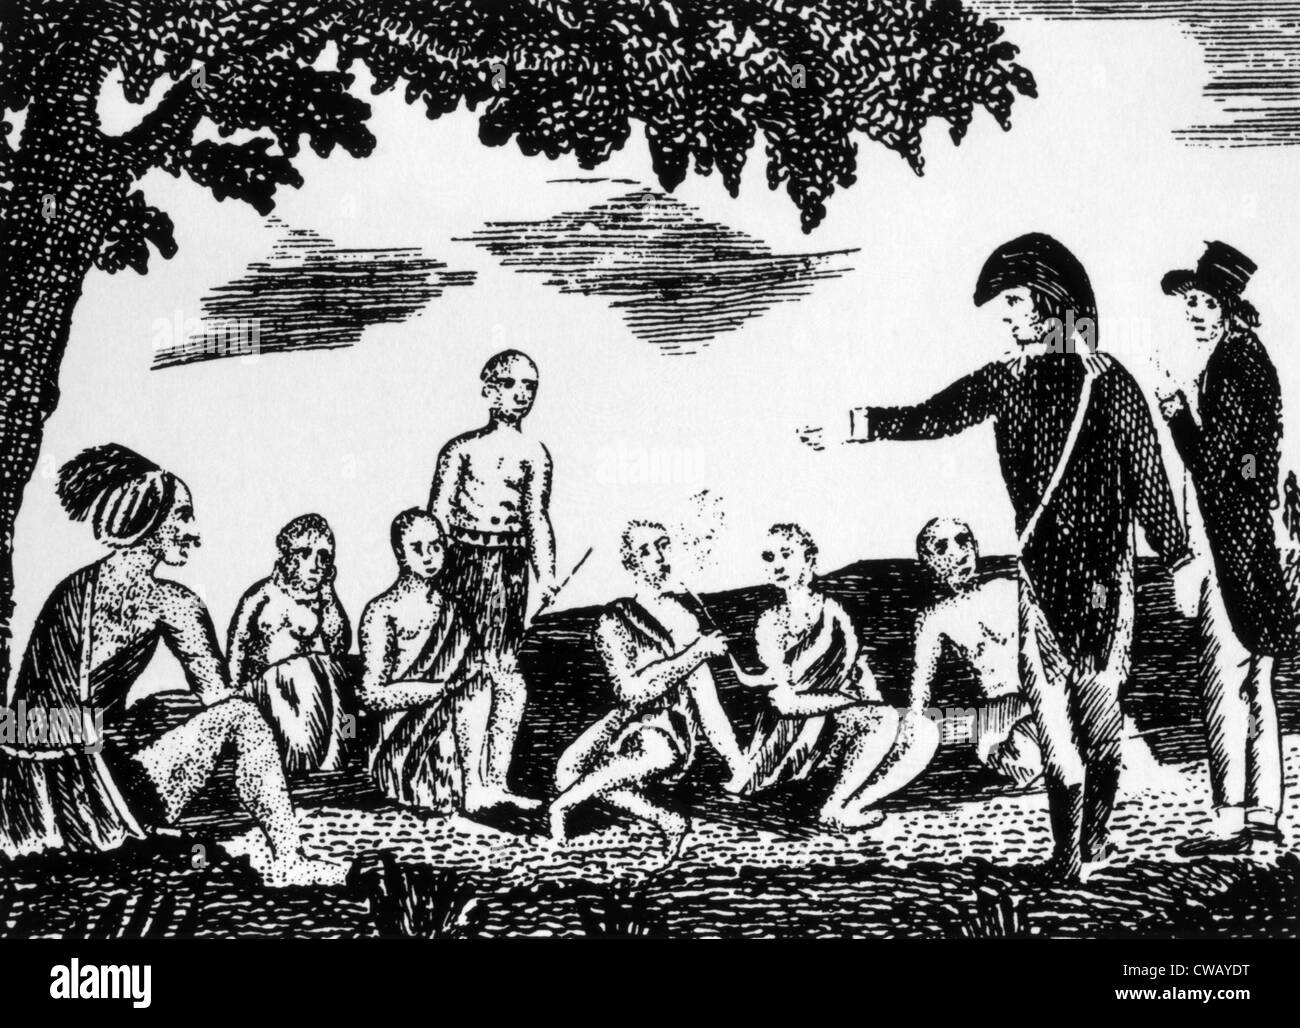 Meriwether Lewis et William Clark tenant un conseil avec les Indiens à ce qui est devenu connu sous le nom de Council Bluffs, Iowa, 1804, gravure sur bois Banque D'Images